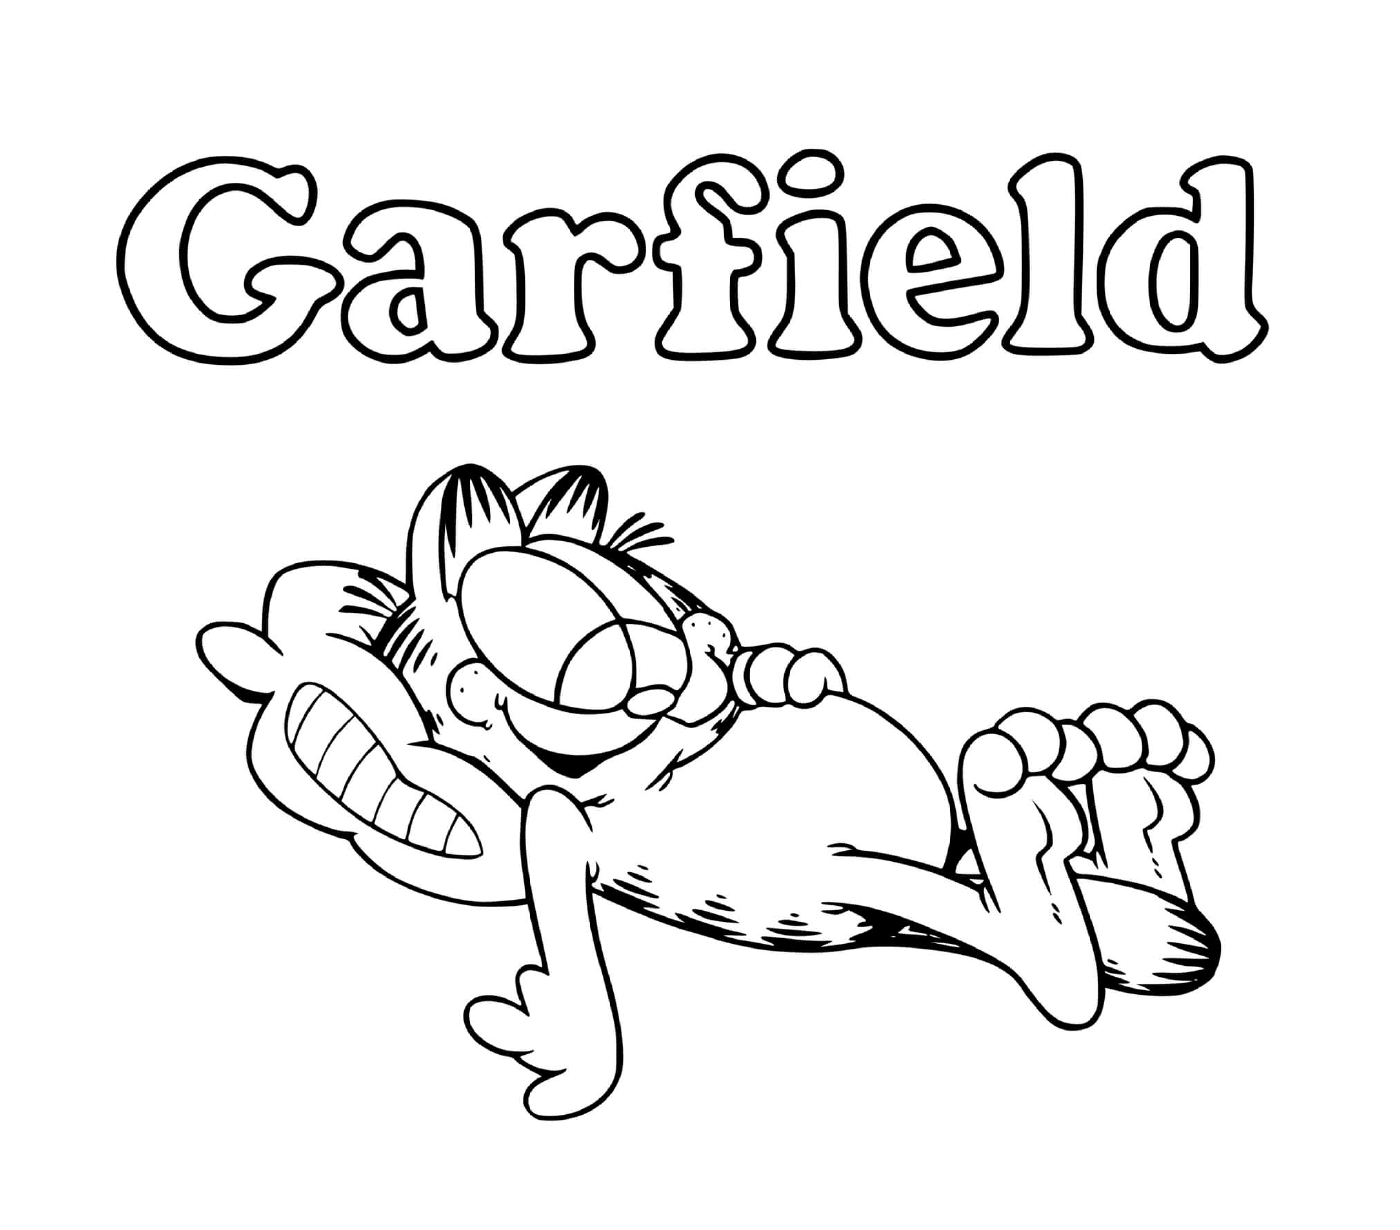  Garfield gosta de comer e dormir 